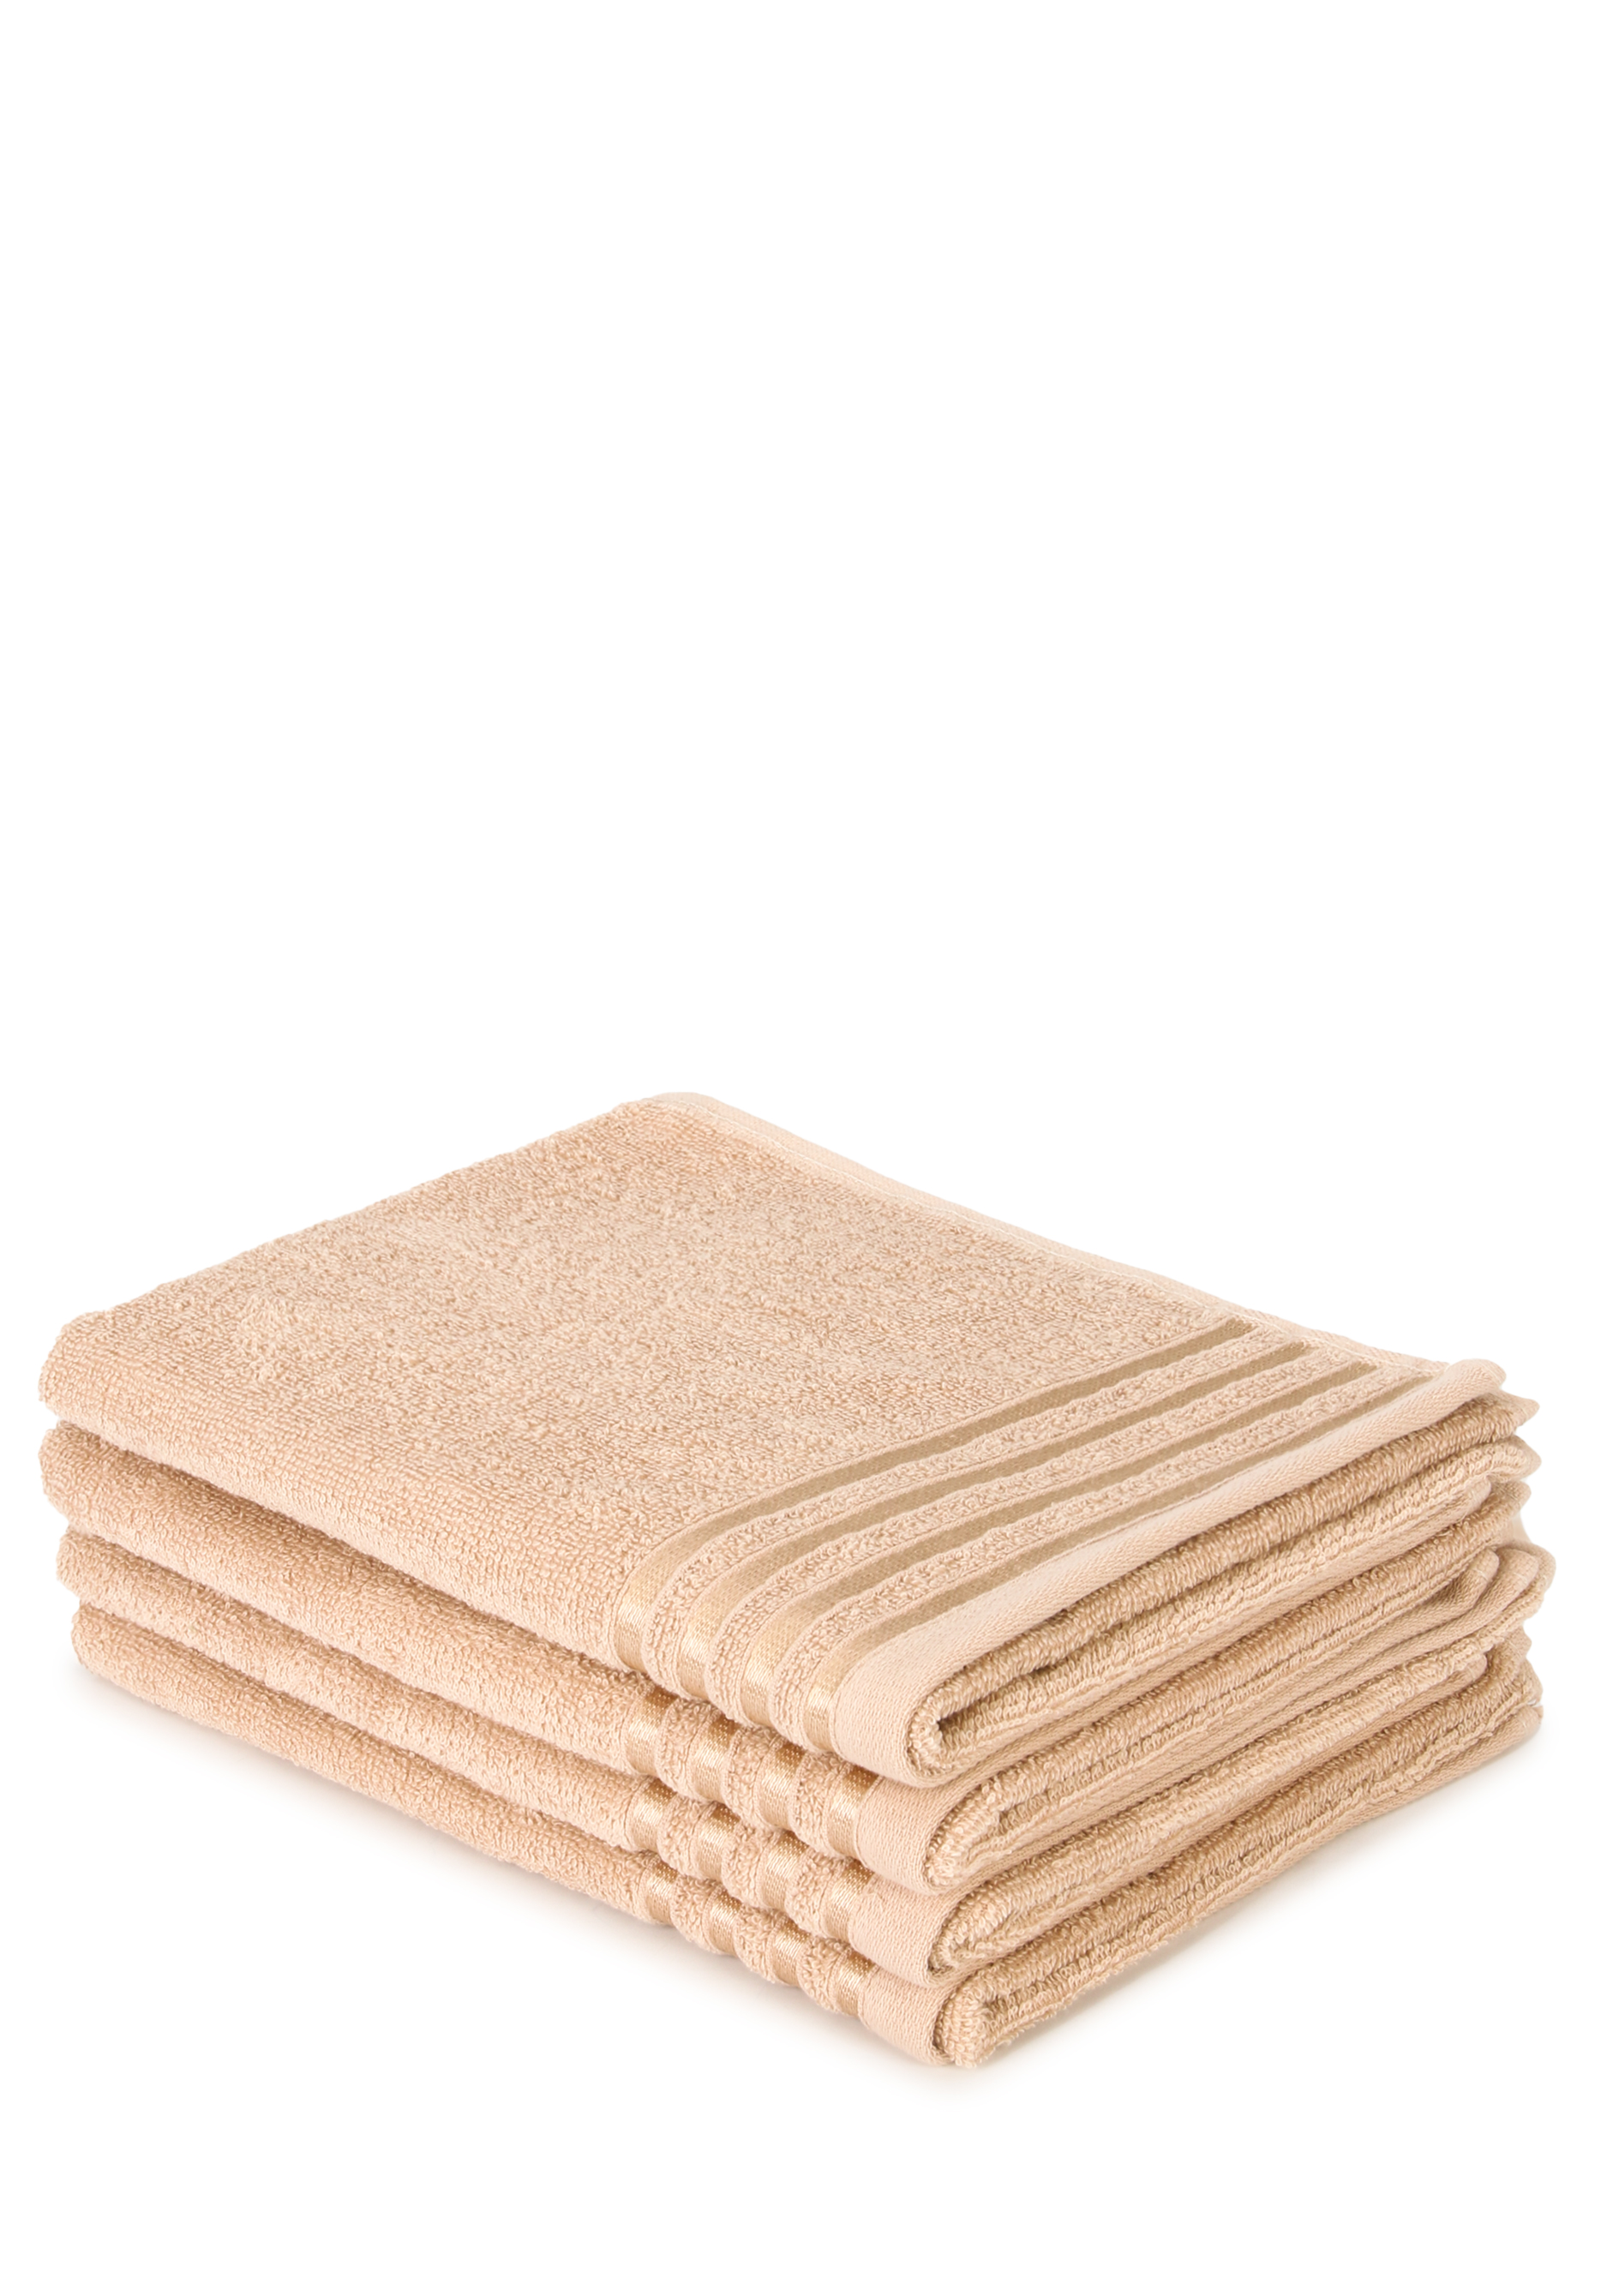 комплект полотенец страйп 4 шт Комплект полотенец 